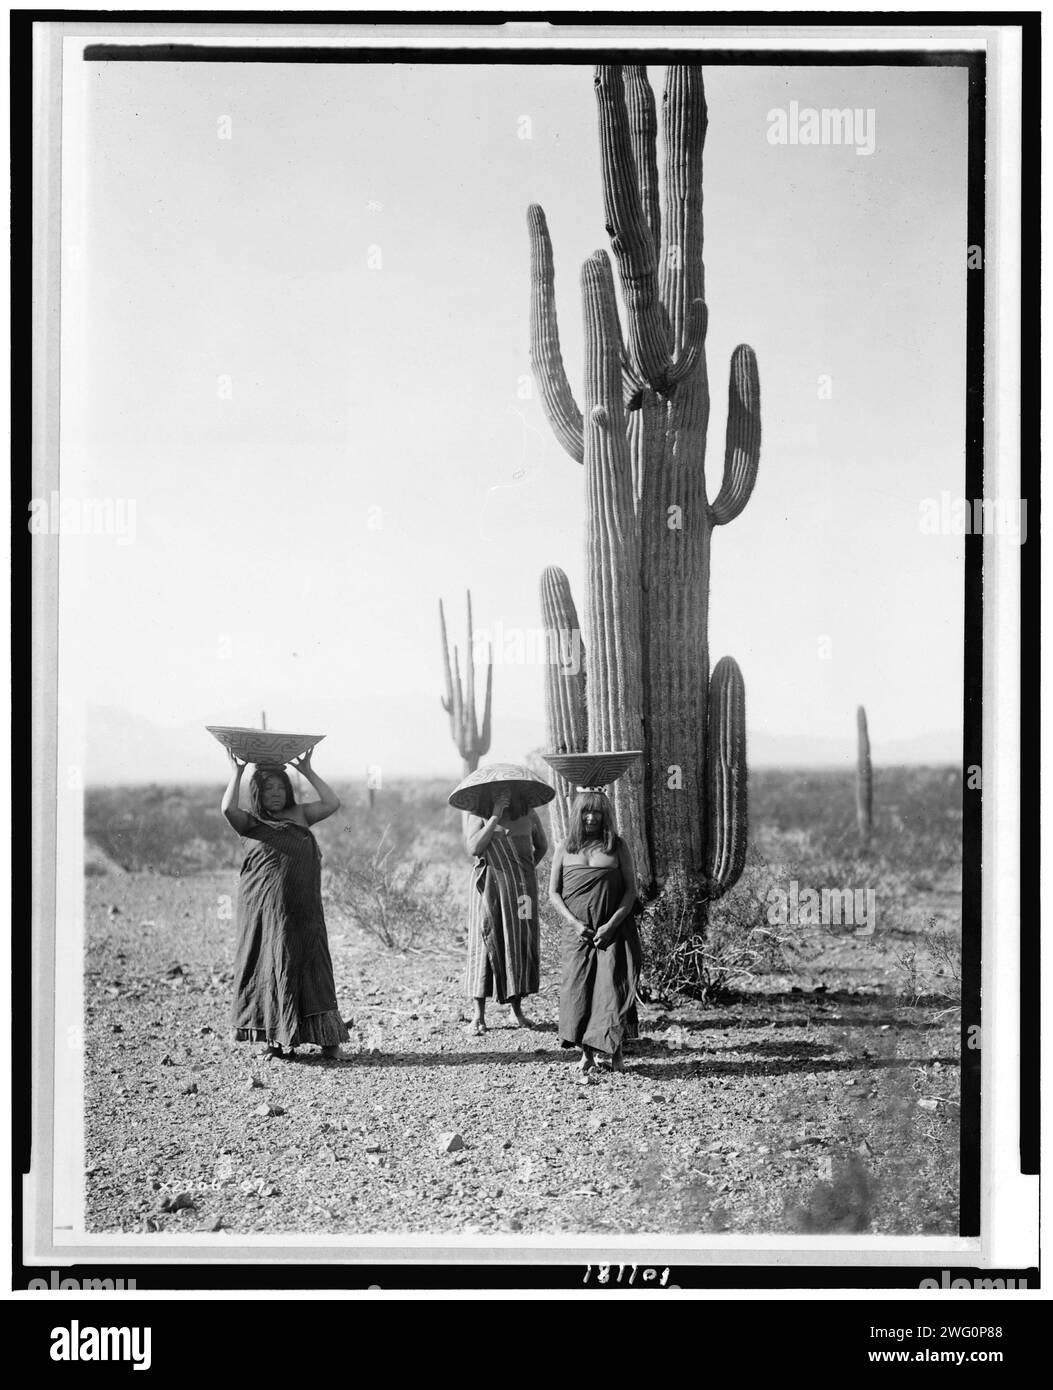 Femmes Maricopa récoltant des fruits de cactus Saguaro, 1907, c1907. Trois femmes Maricopa avec des paniers sur la tête, debout près des cactus Saguaro. Banque D'Images